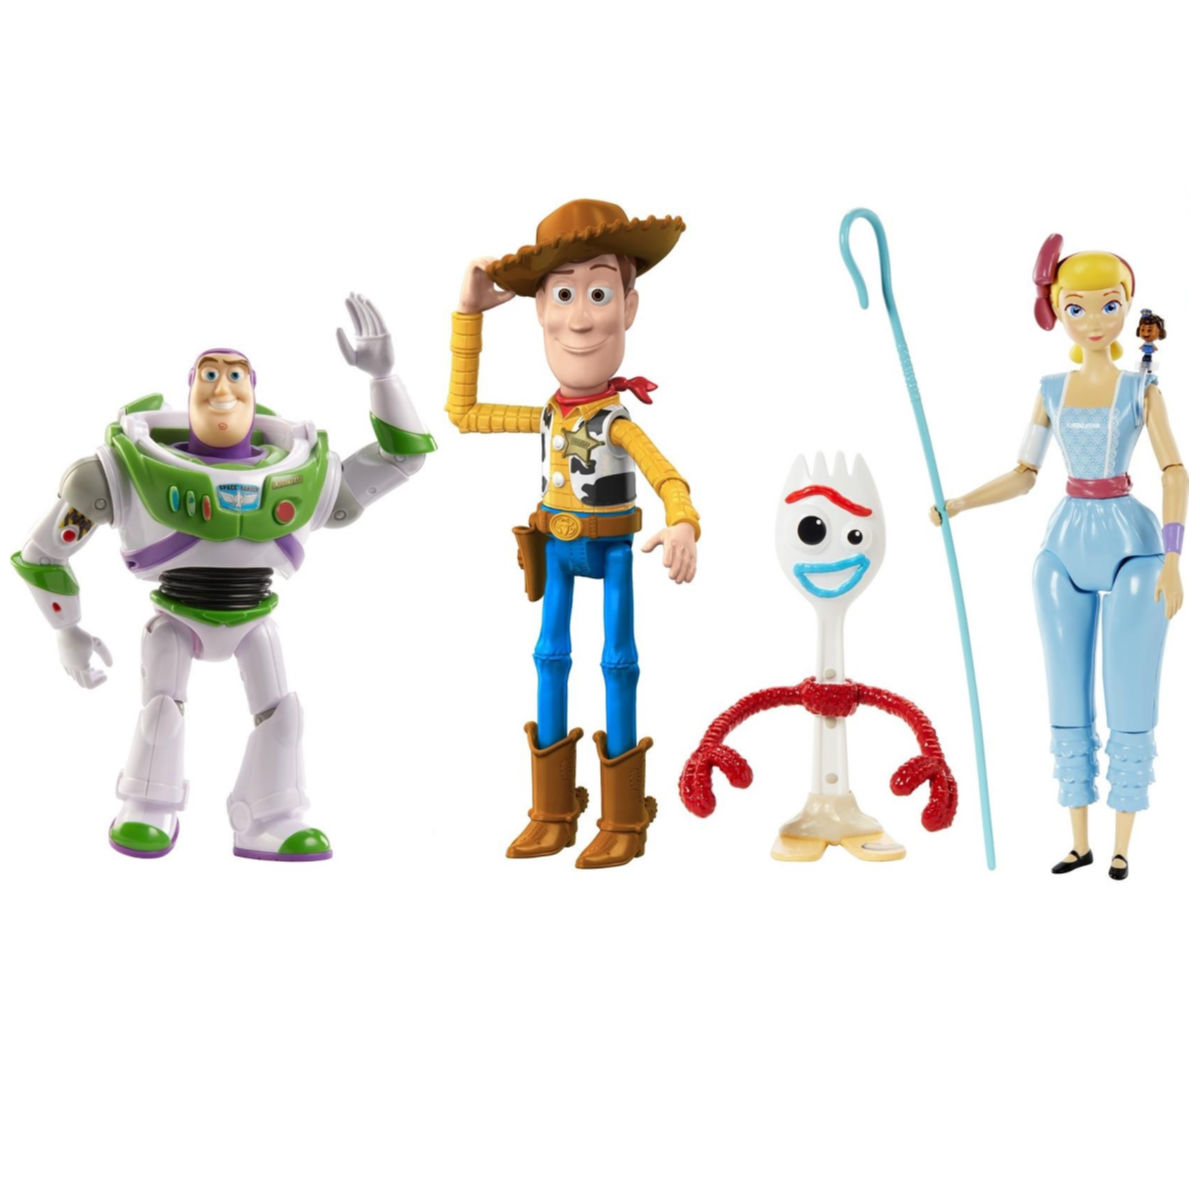 Disney Pixar Toy Story 4 Figure Multi-Pack